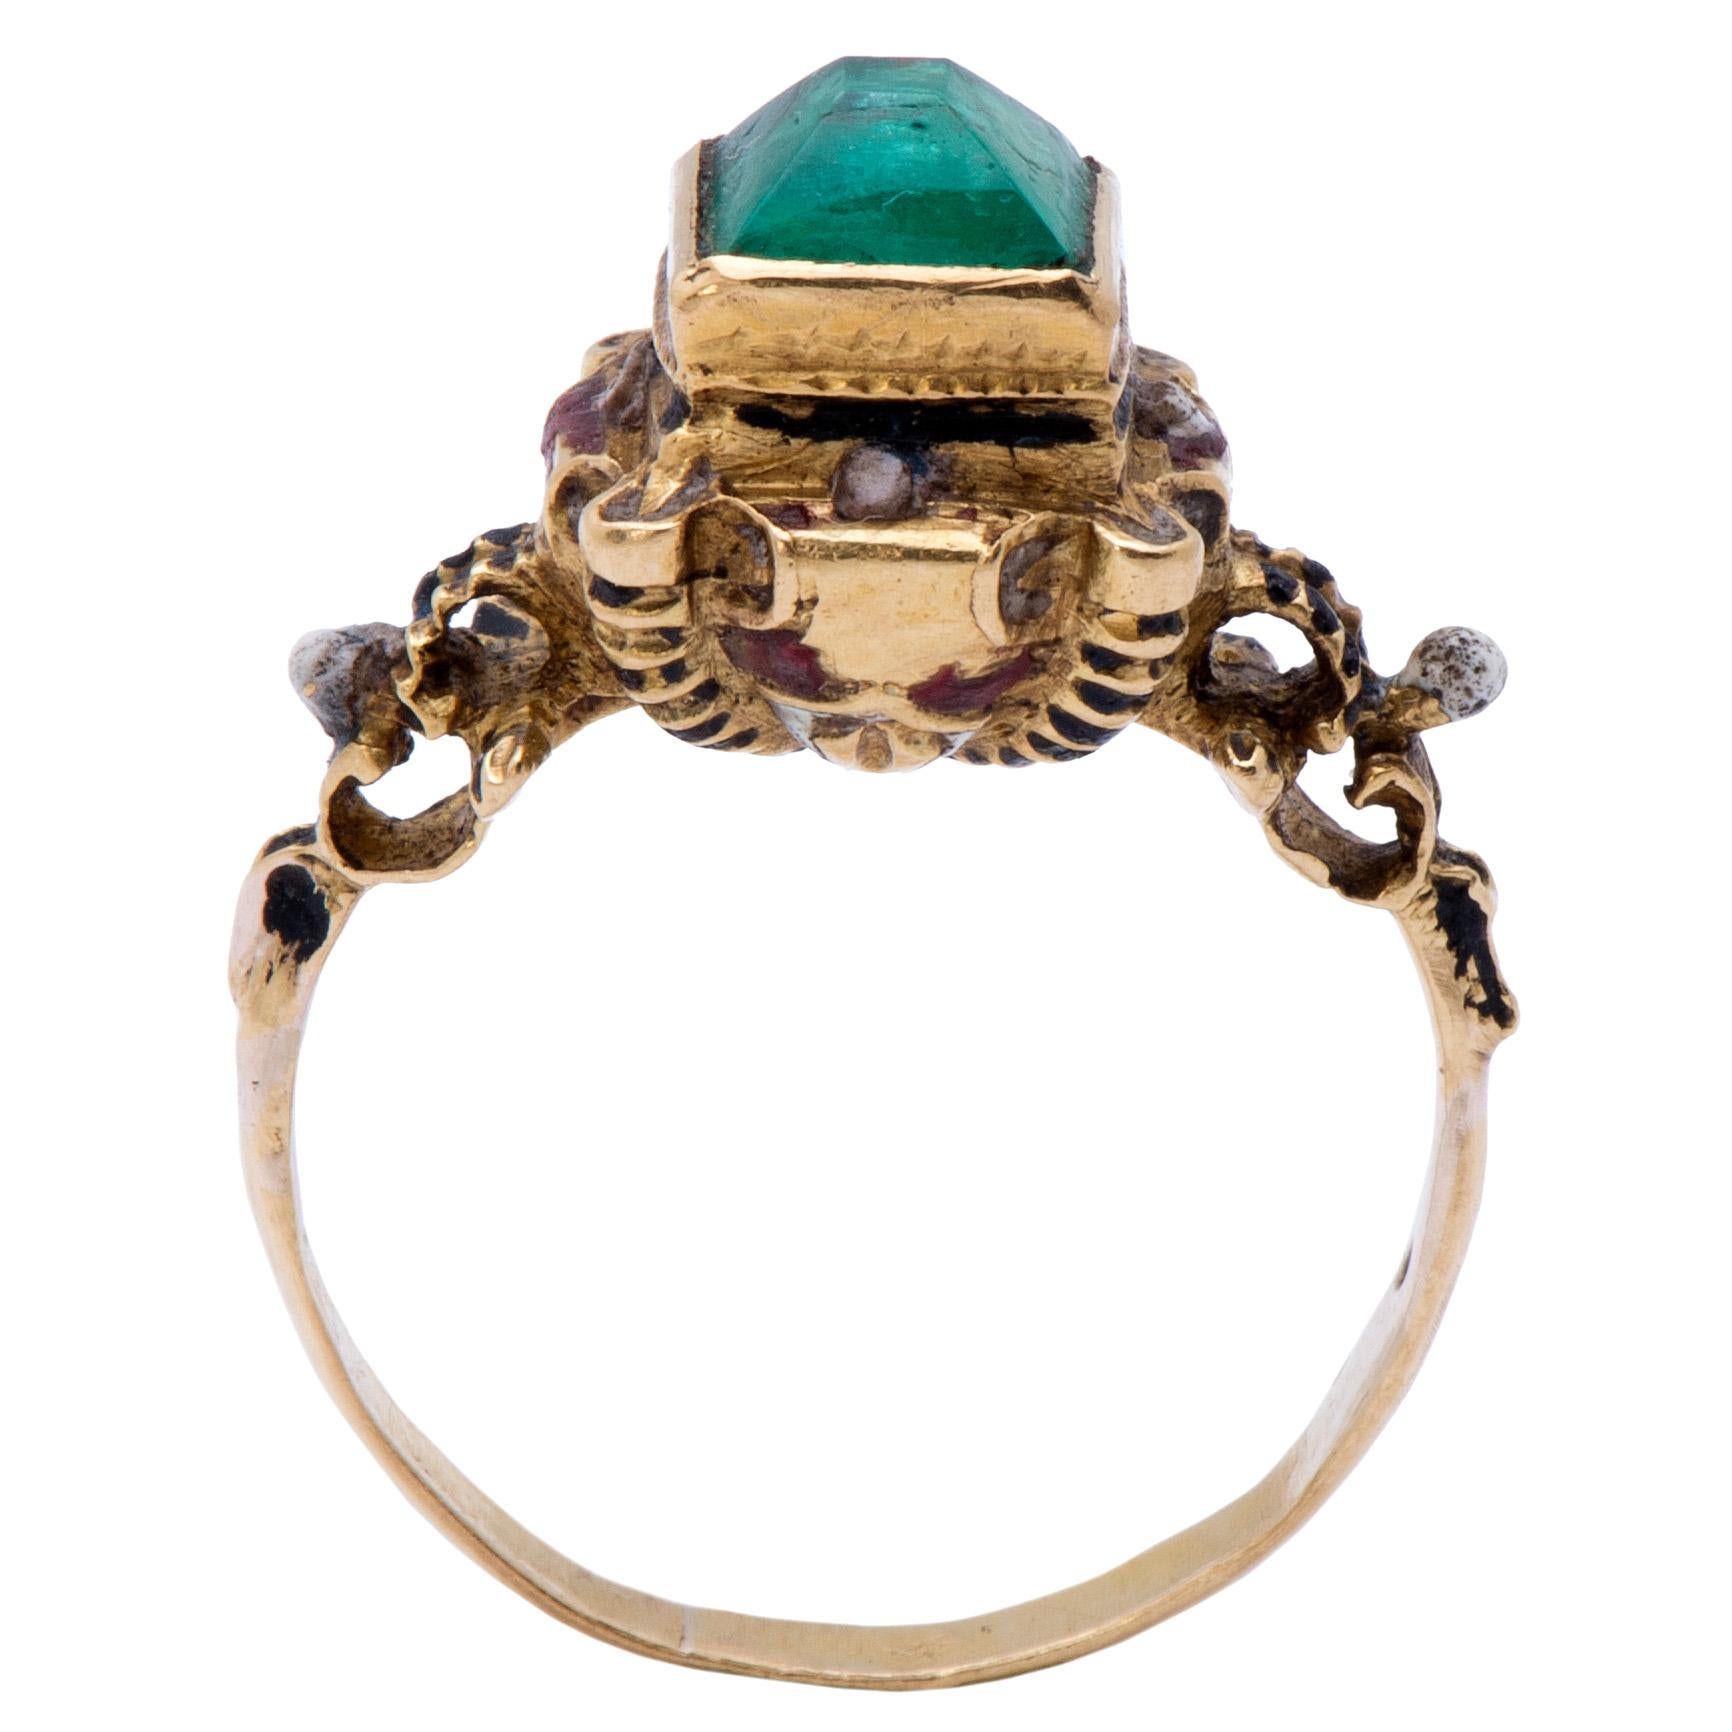 Antique Gold Renaissance Revival Ring 2